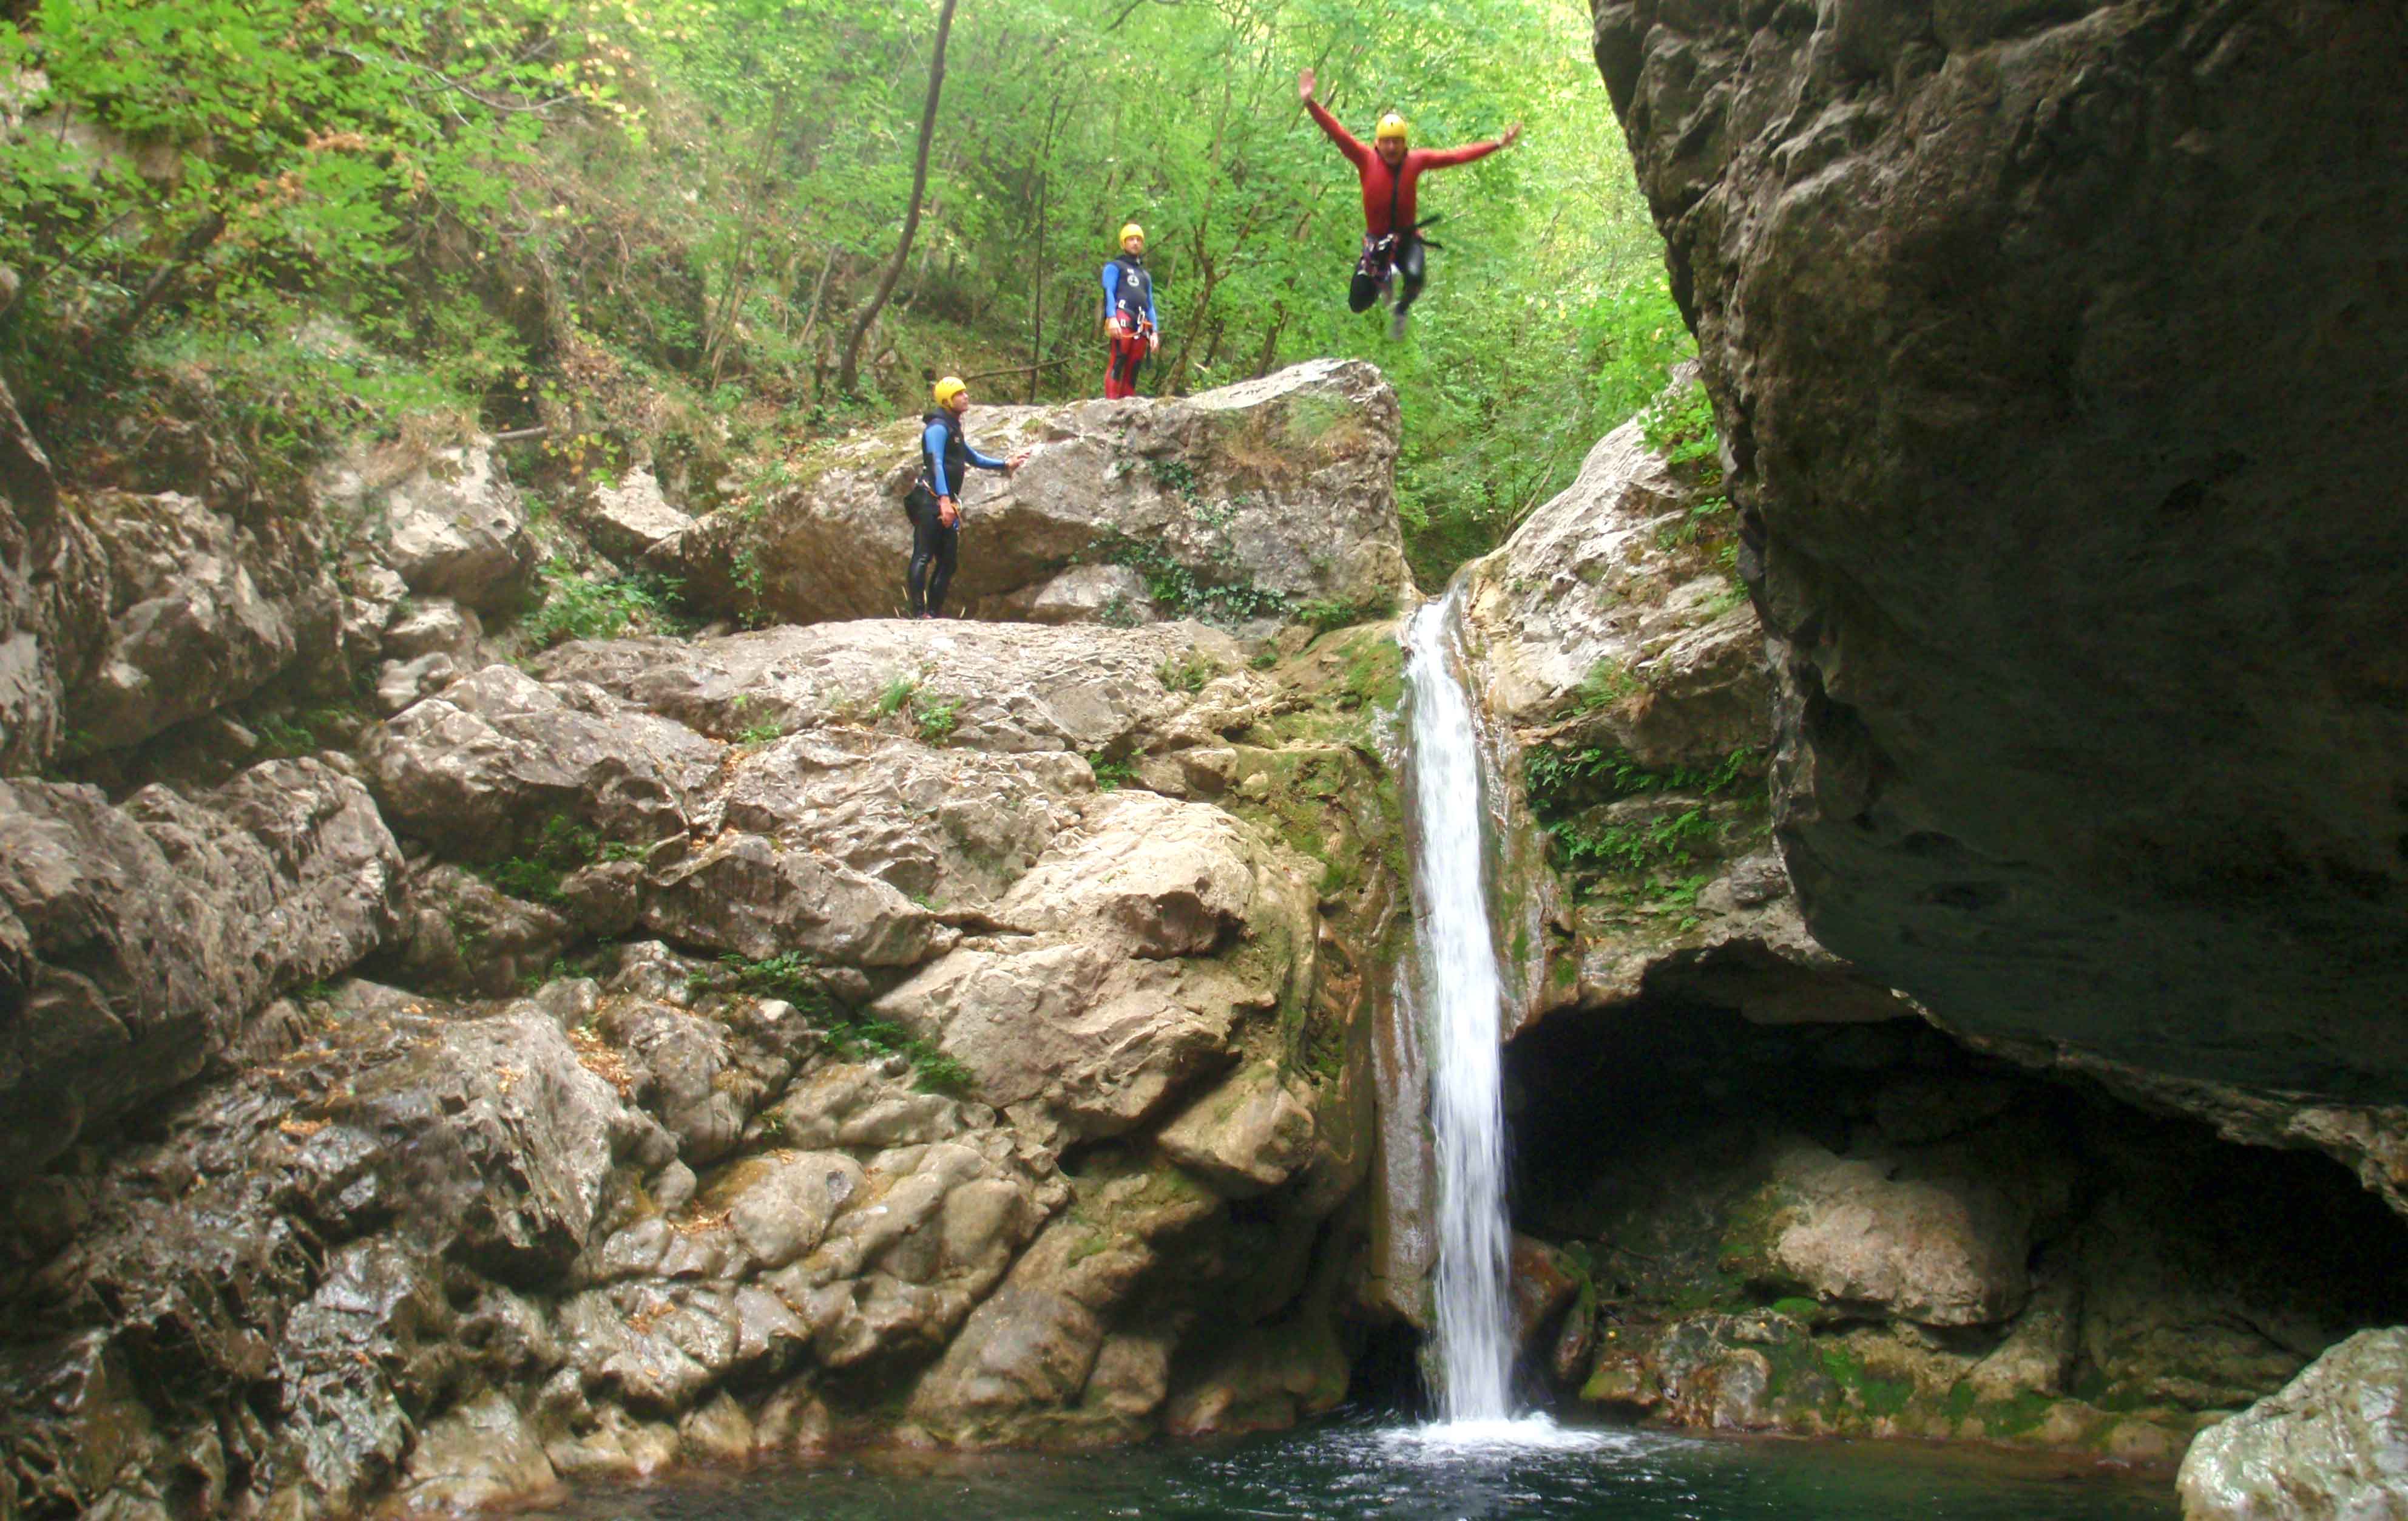 Canyon Forest - Un aventurier qui saute une petite cascade pour atterrir dans une vasque